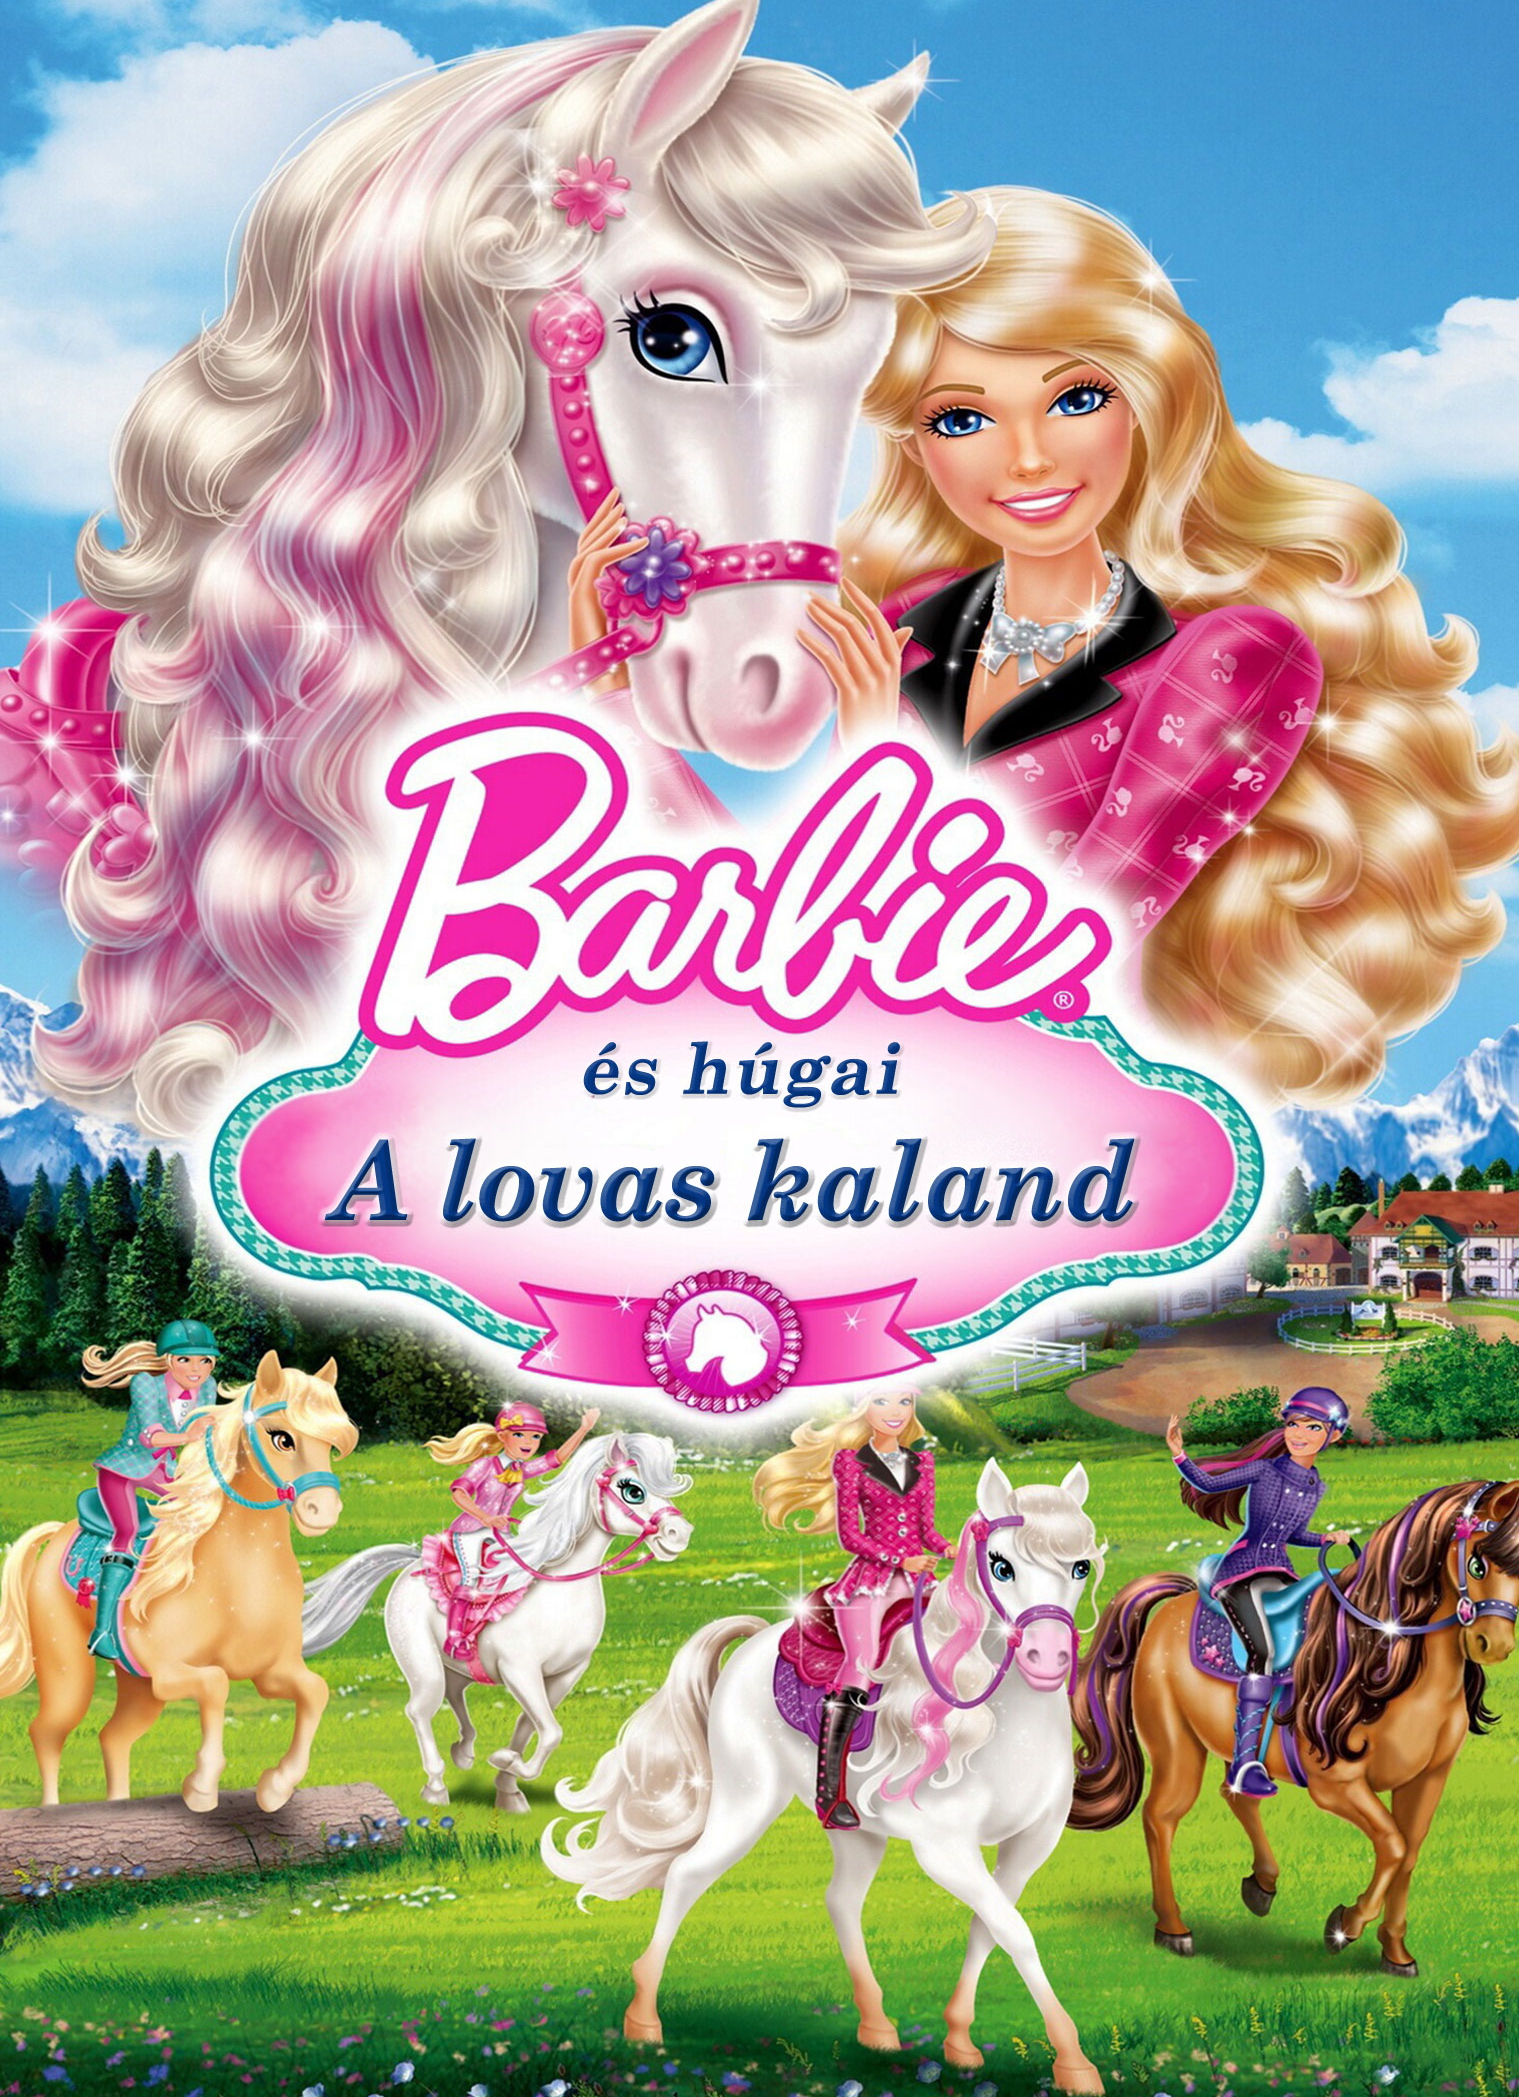 barbie és húgai a lovas kaland youtube 1